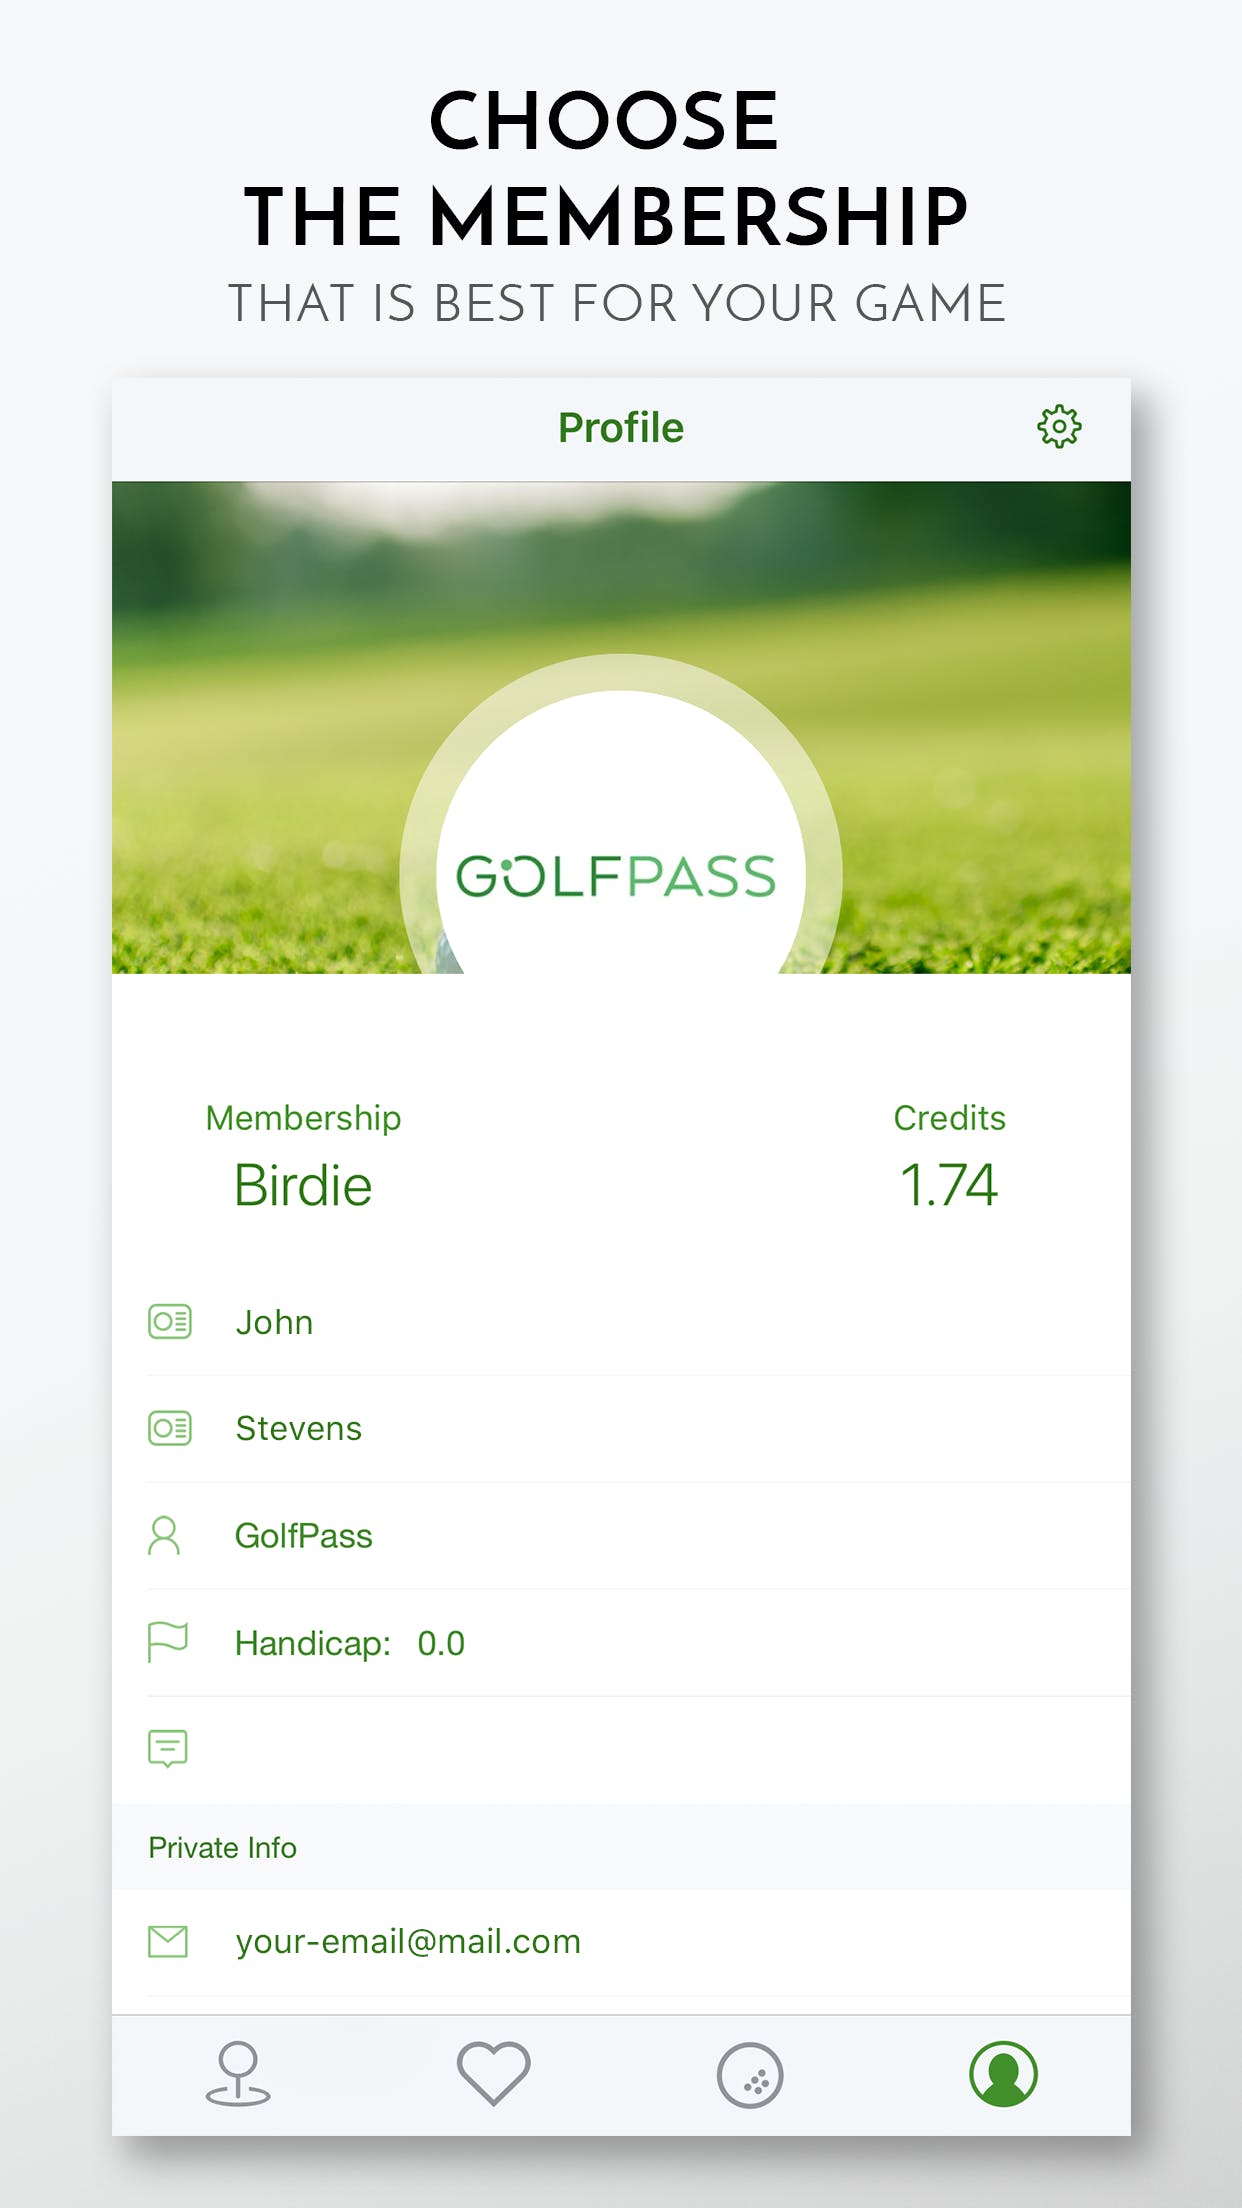 GolfPass media 1